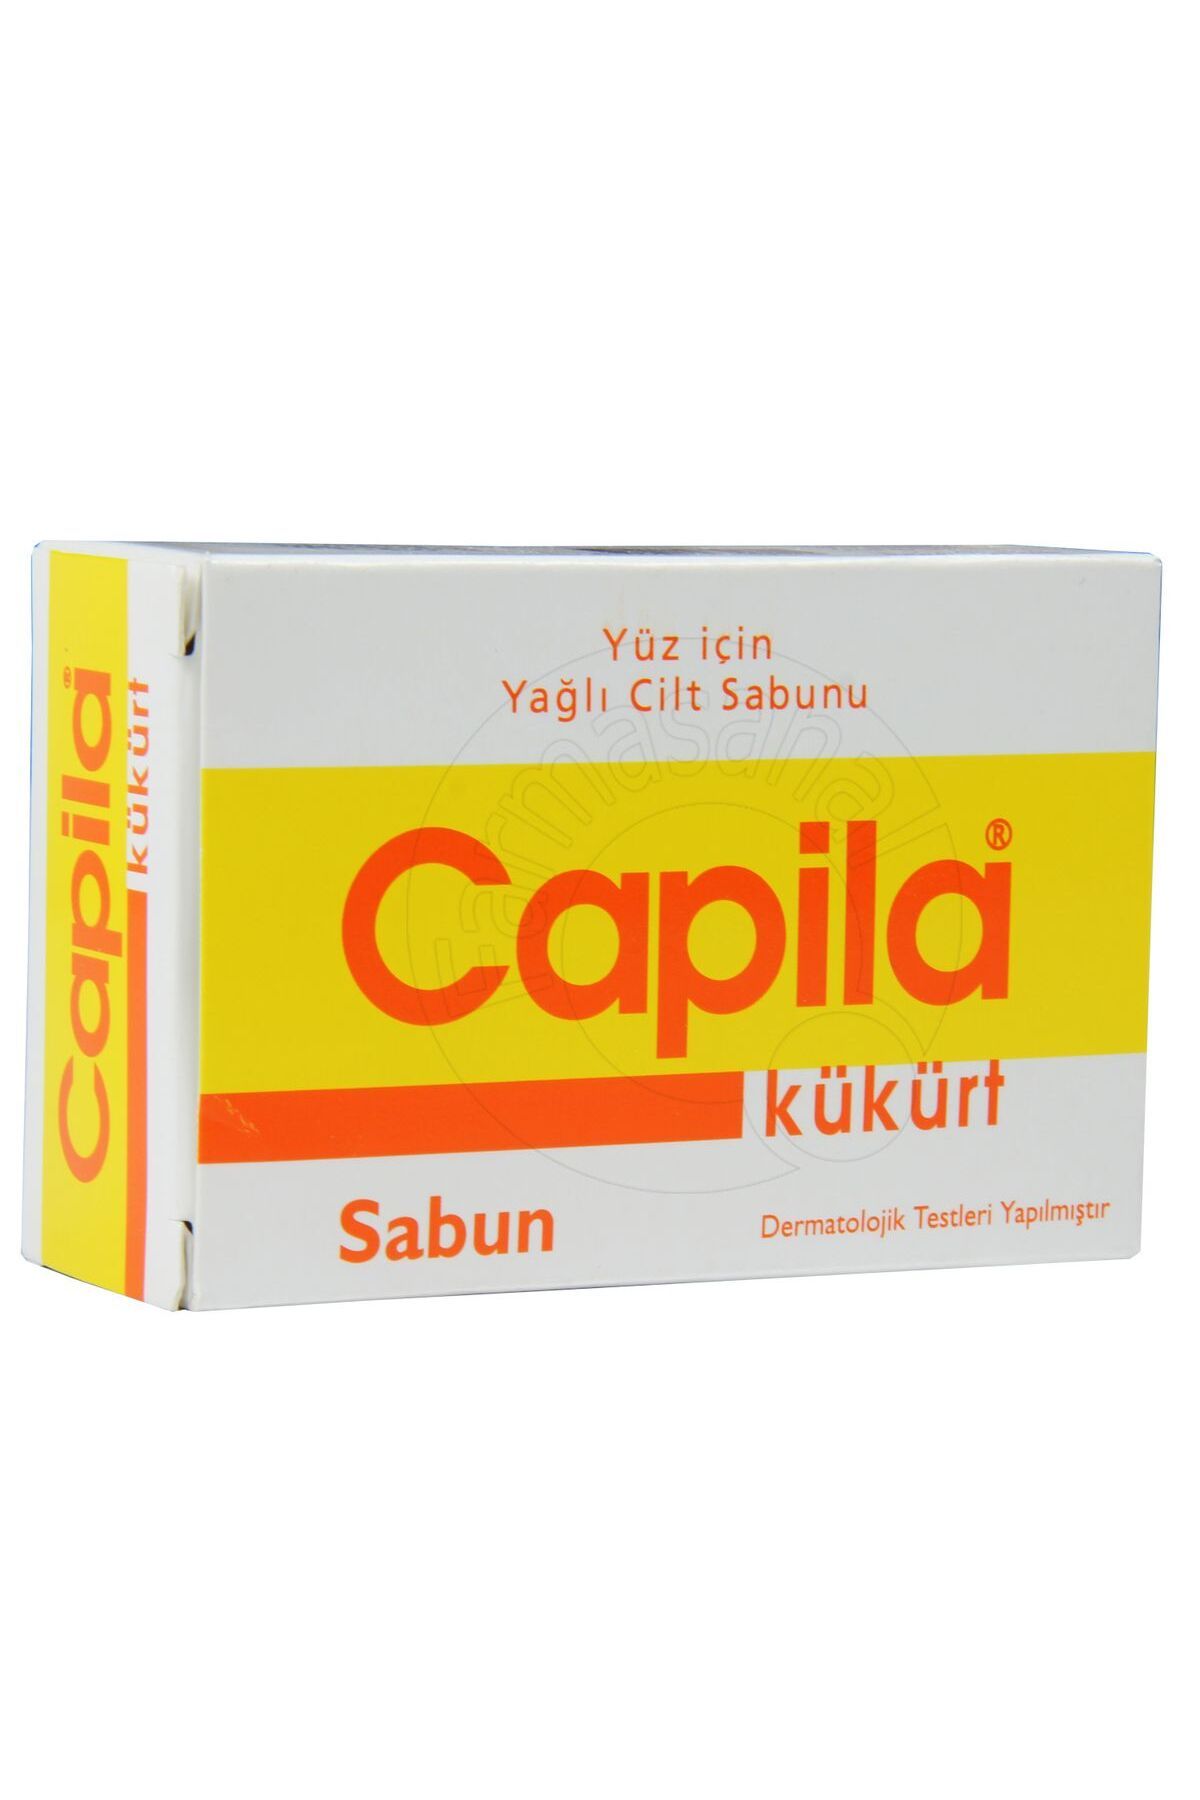 Capila Kükürtlü Sabun 90 gr ( Yüz Için Yağlı Cilt Sabunu )